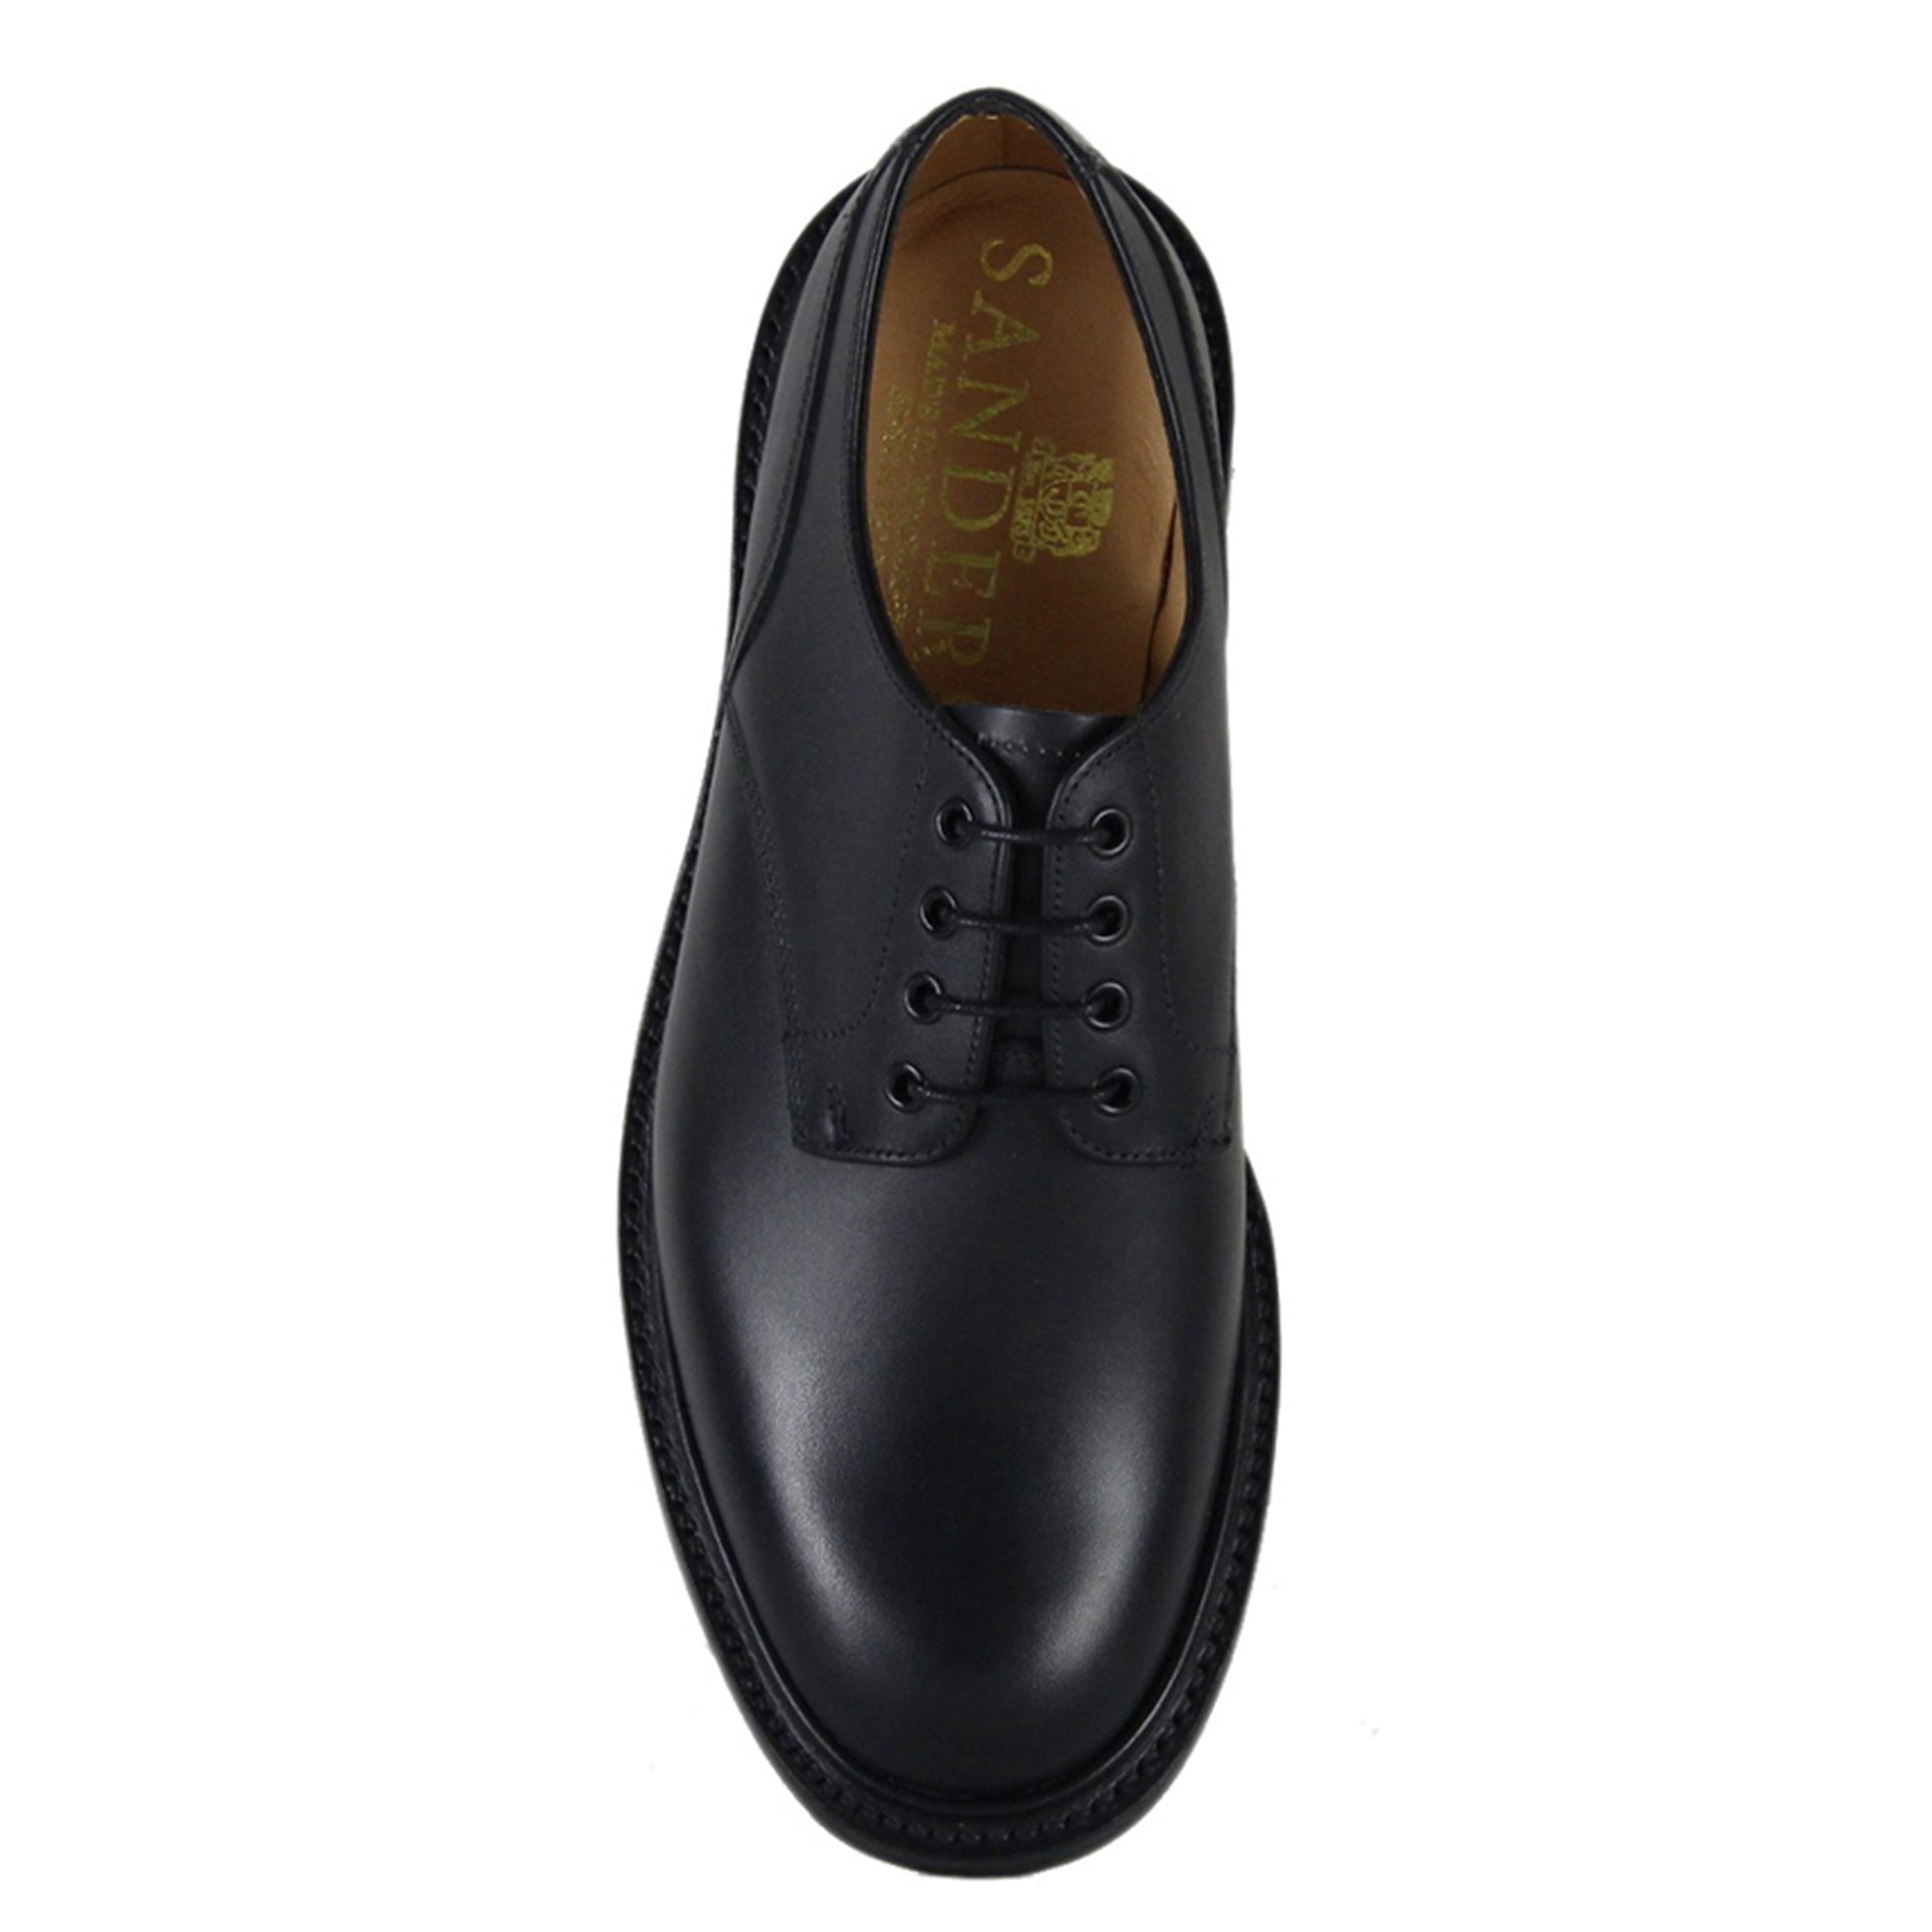 Sanders Worcester Gibson Derby Shoe Leather Footwear in Black Top